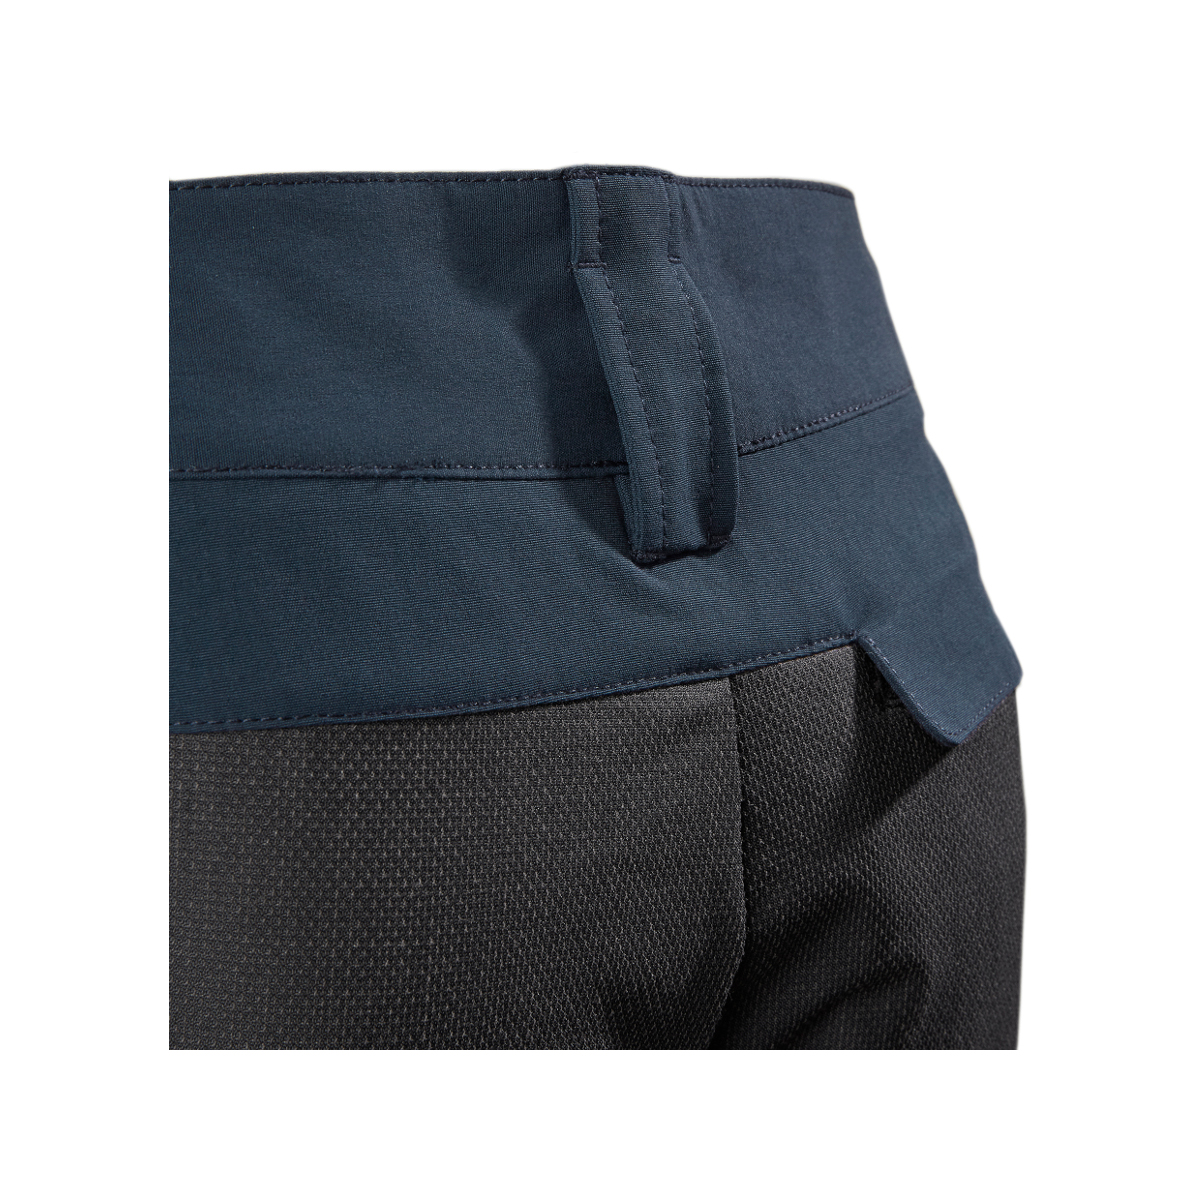 Musto Evolution Performance pantalon de voile 2.0 homme bleu marine, taille 34 Long